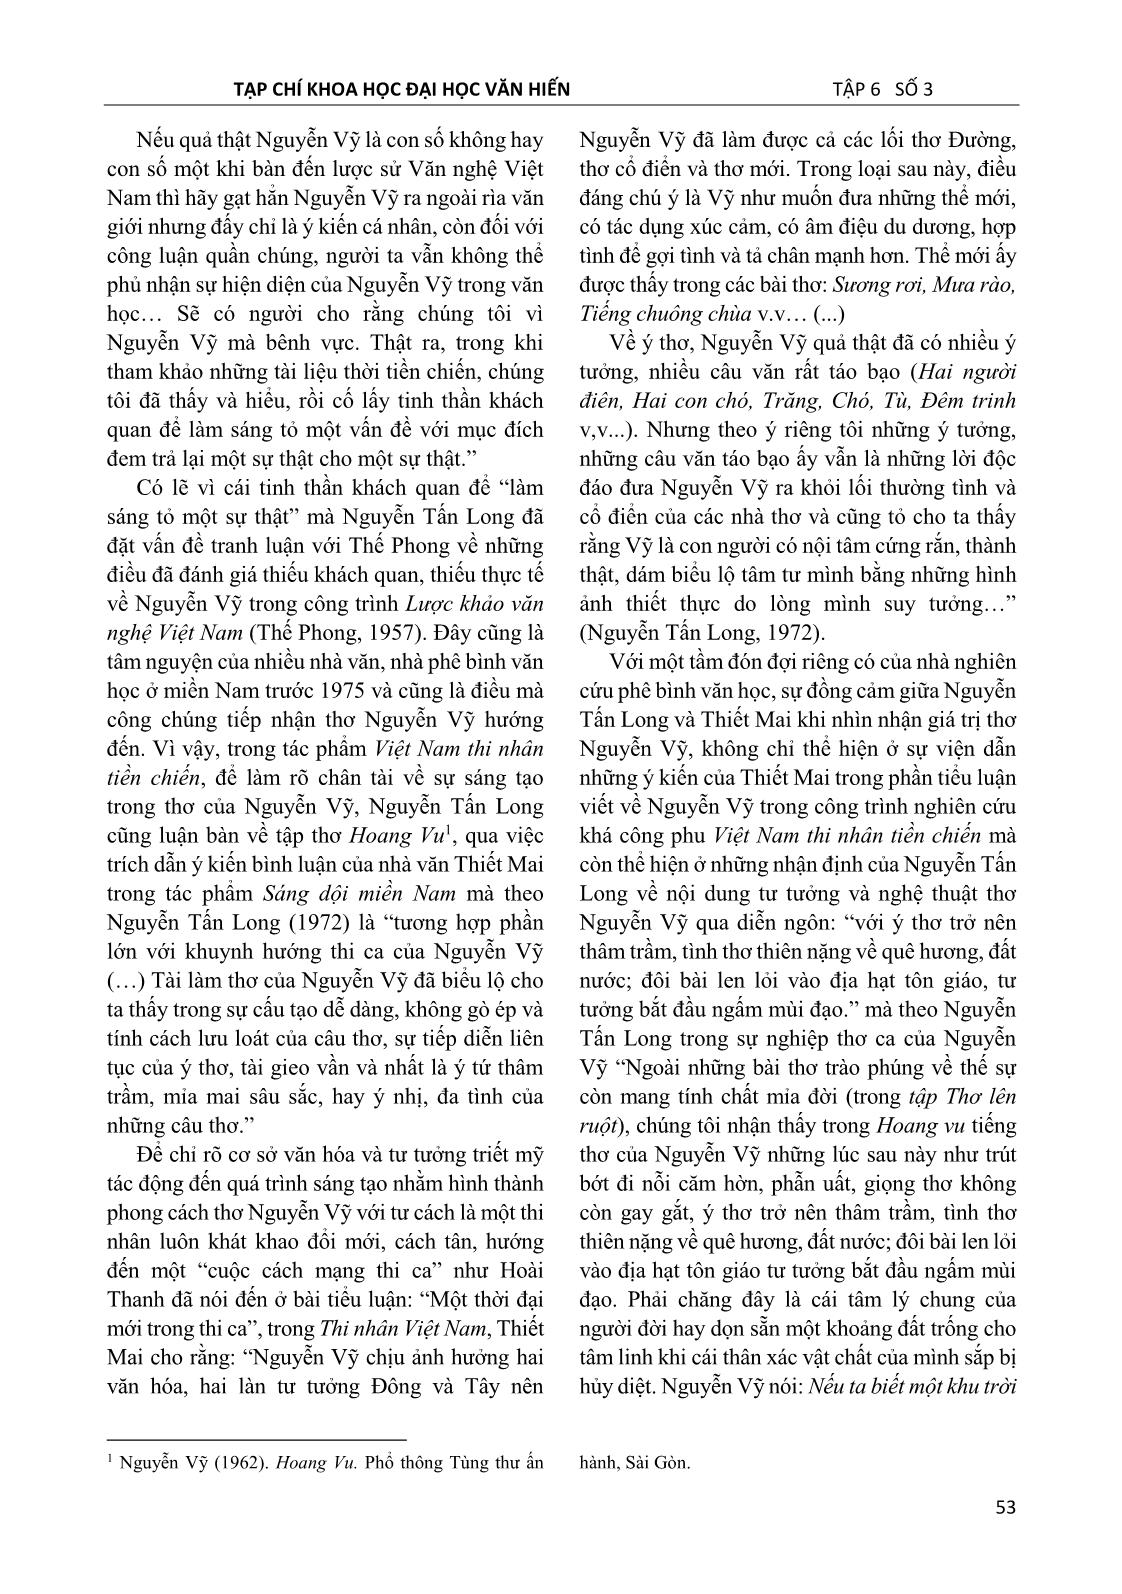 Thơ Nguyễn Vỹ trong tiếp nhận của phê bình văn học ở miền Nam giai đoạn 1954 – 1975 trang 5